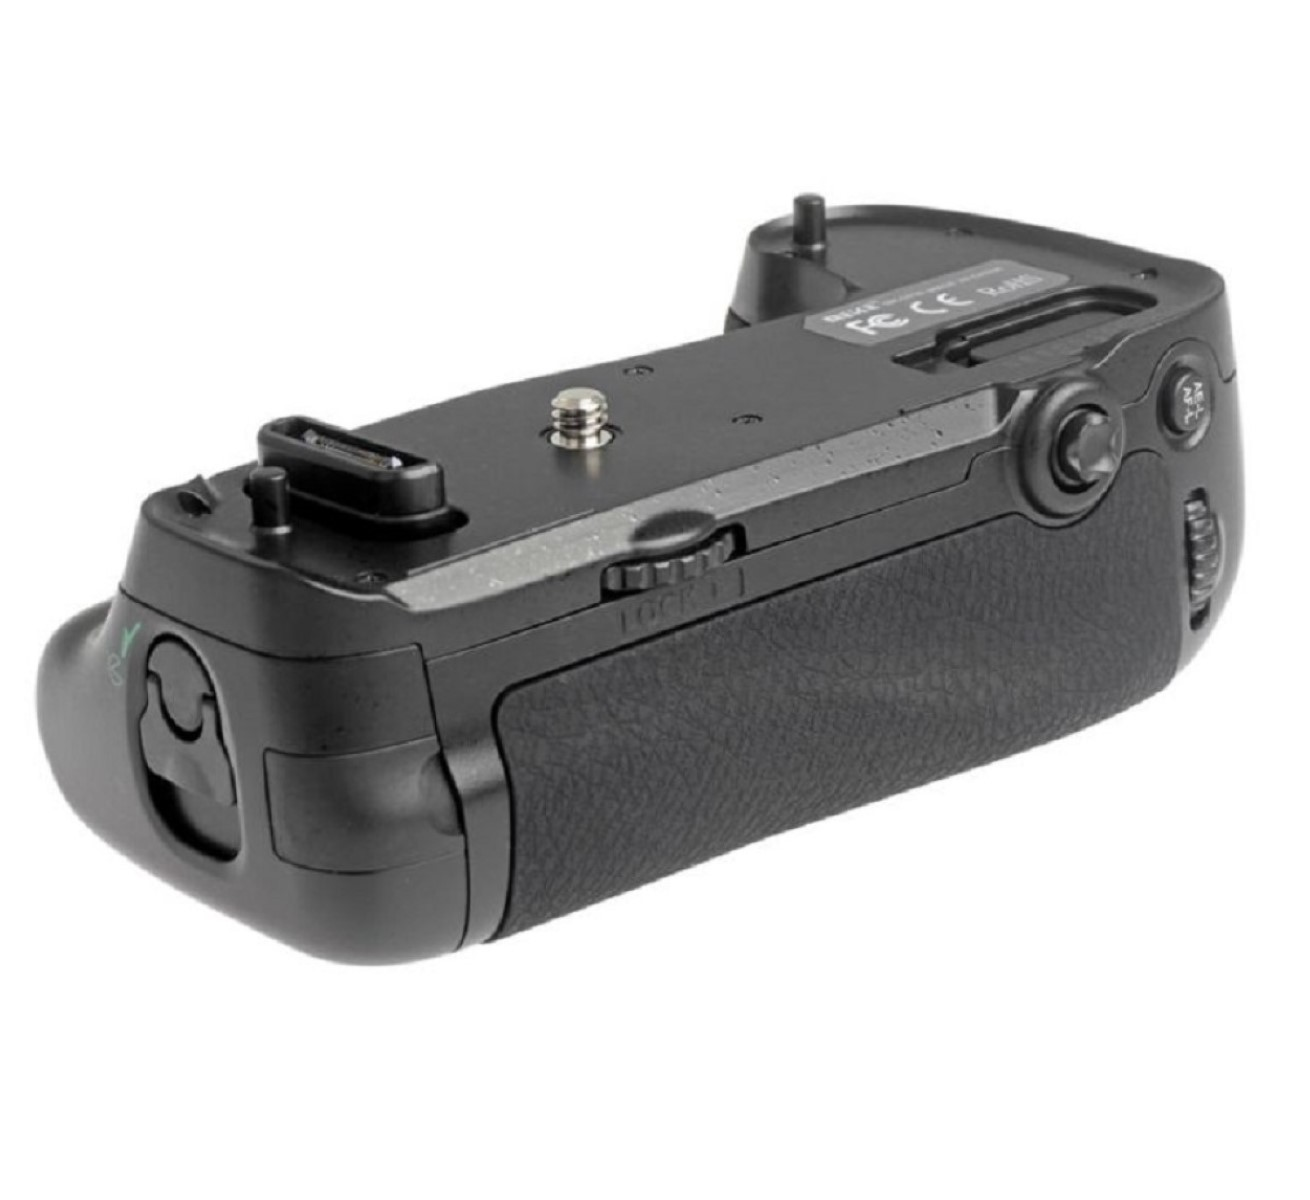 Funk-Timer-Fernauslöser Batteriegriff, Nikon passend MB-D16 Nikon für Batteriegriff D750 wie mit D750 MK-DR750, AYEX Black, für